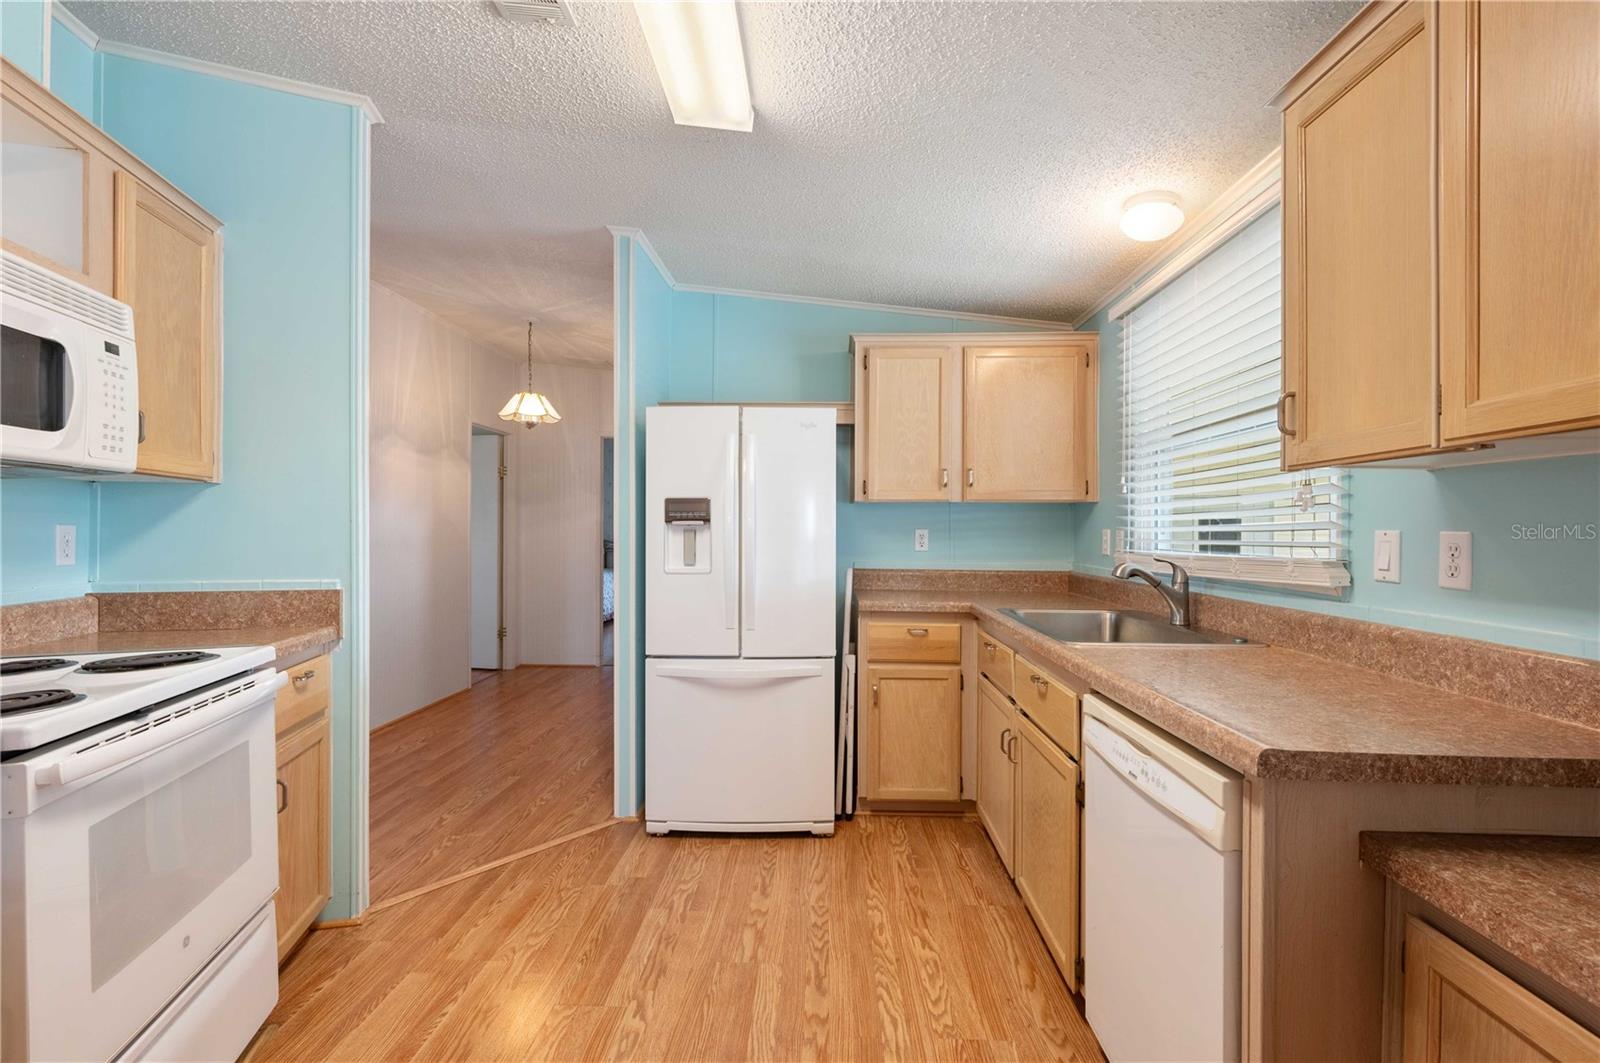 Kitchen has laminate flooring, newer appliances, breakfast bar, and plenty of storage.